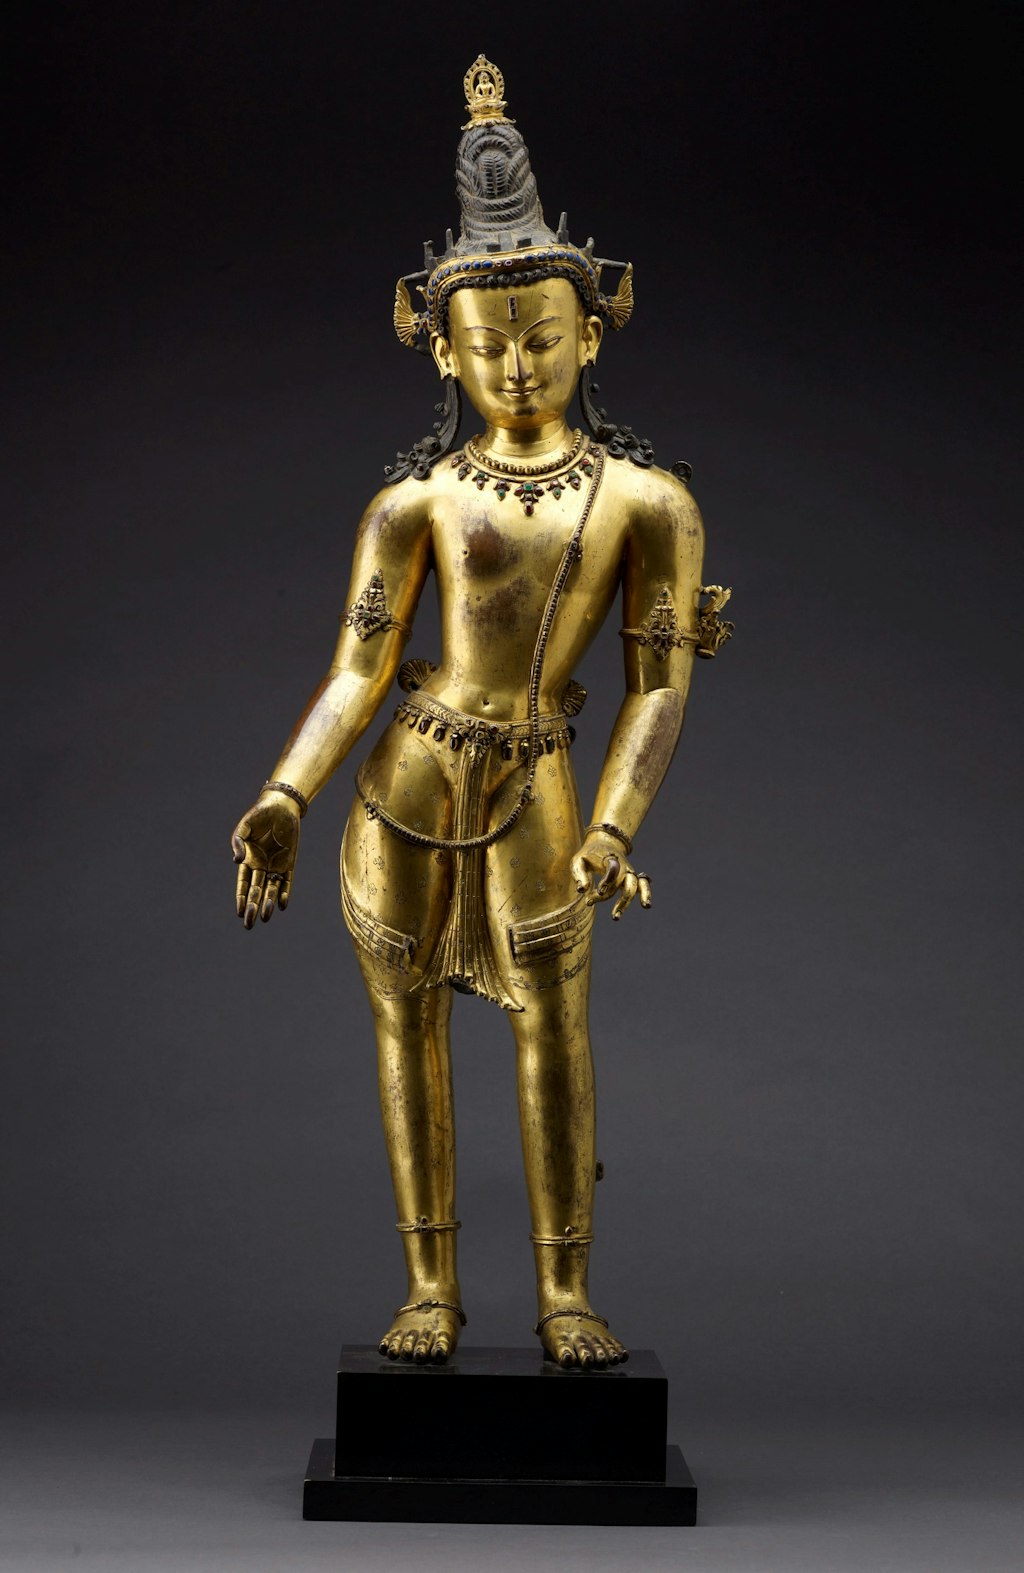 [w:117.2010[Padmapani]], Kathmandu Valley, Nepal, c13th century, Art Gallery of New South Wales